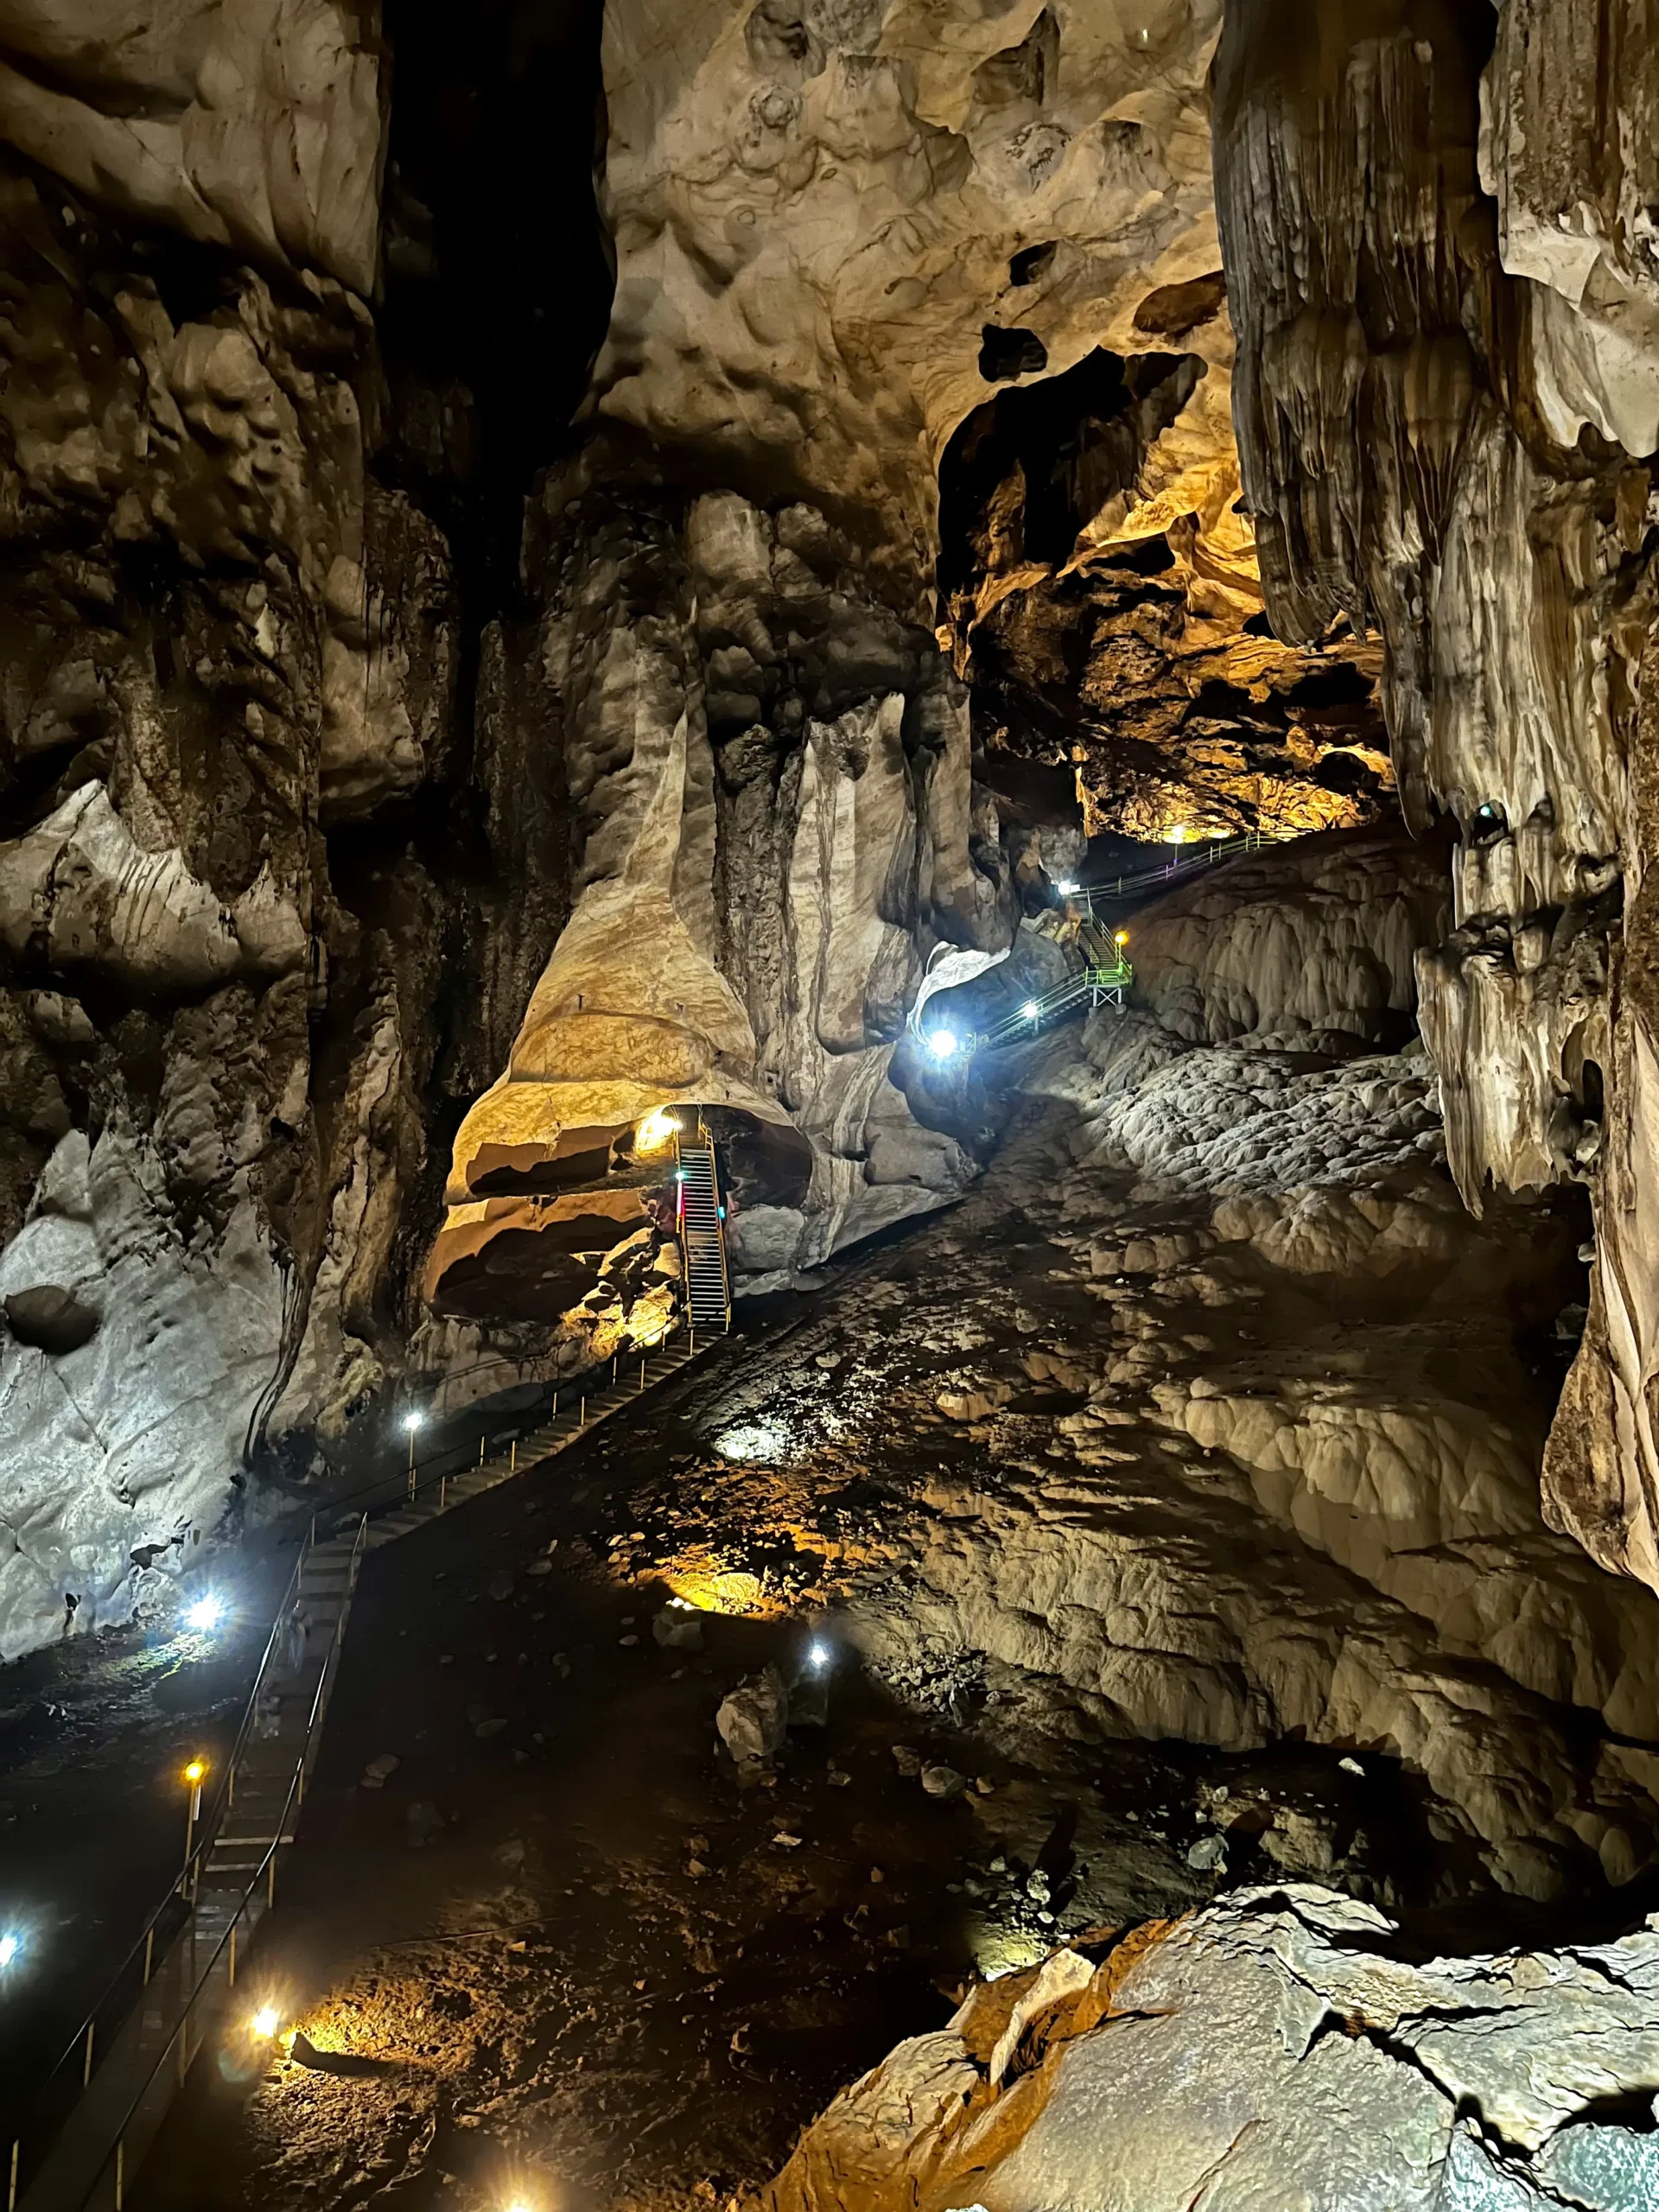 gua-tempurung-review-activities-photo-ticket-price-cave-tempurung-ipoh-perak